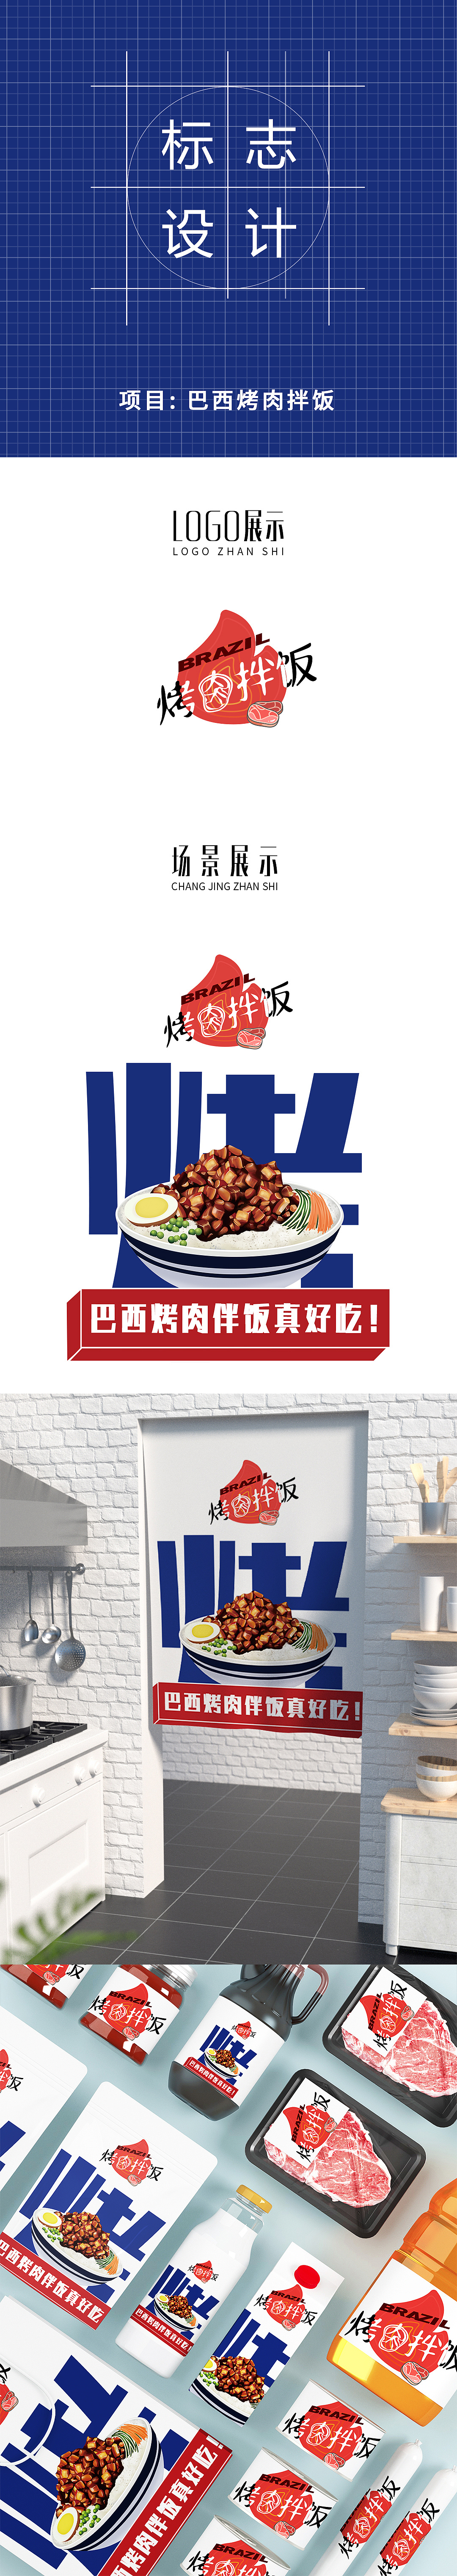 土耳其烤肉拌饭logo图片